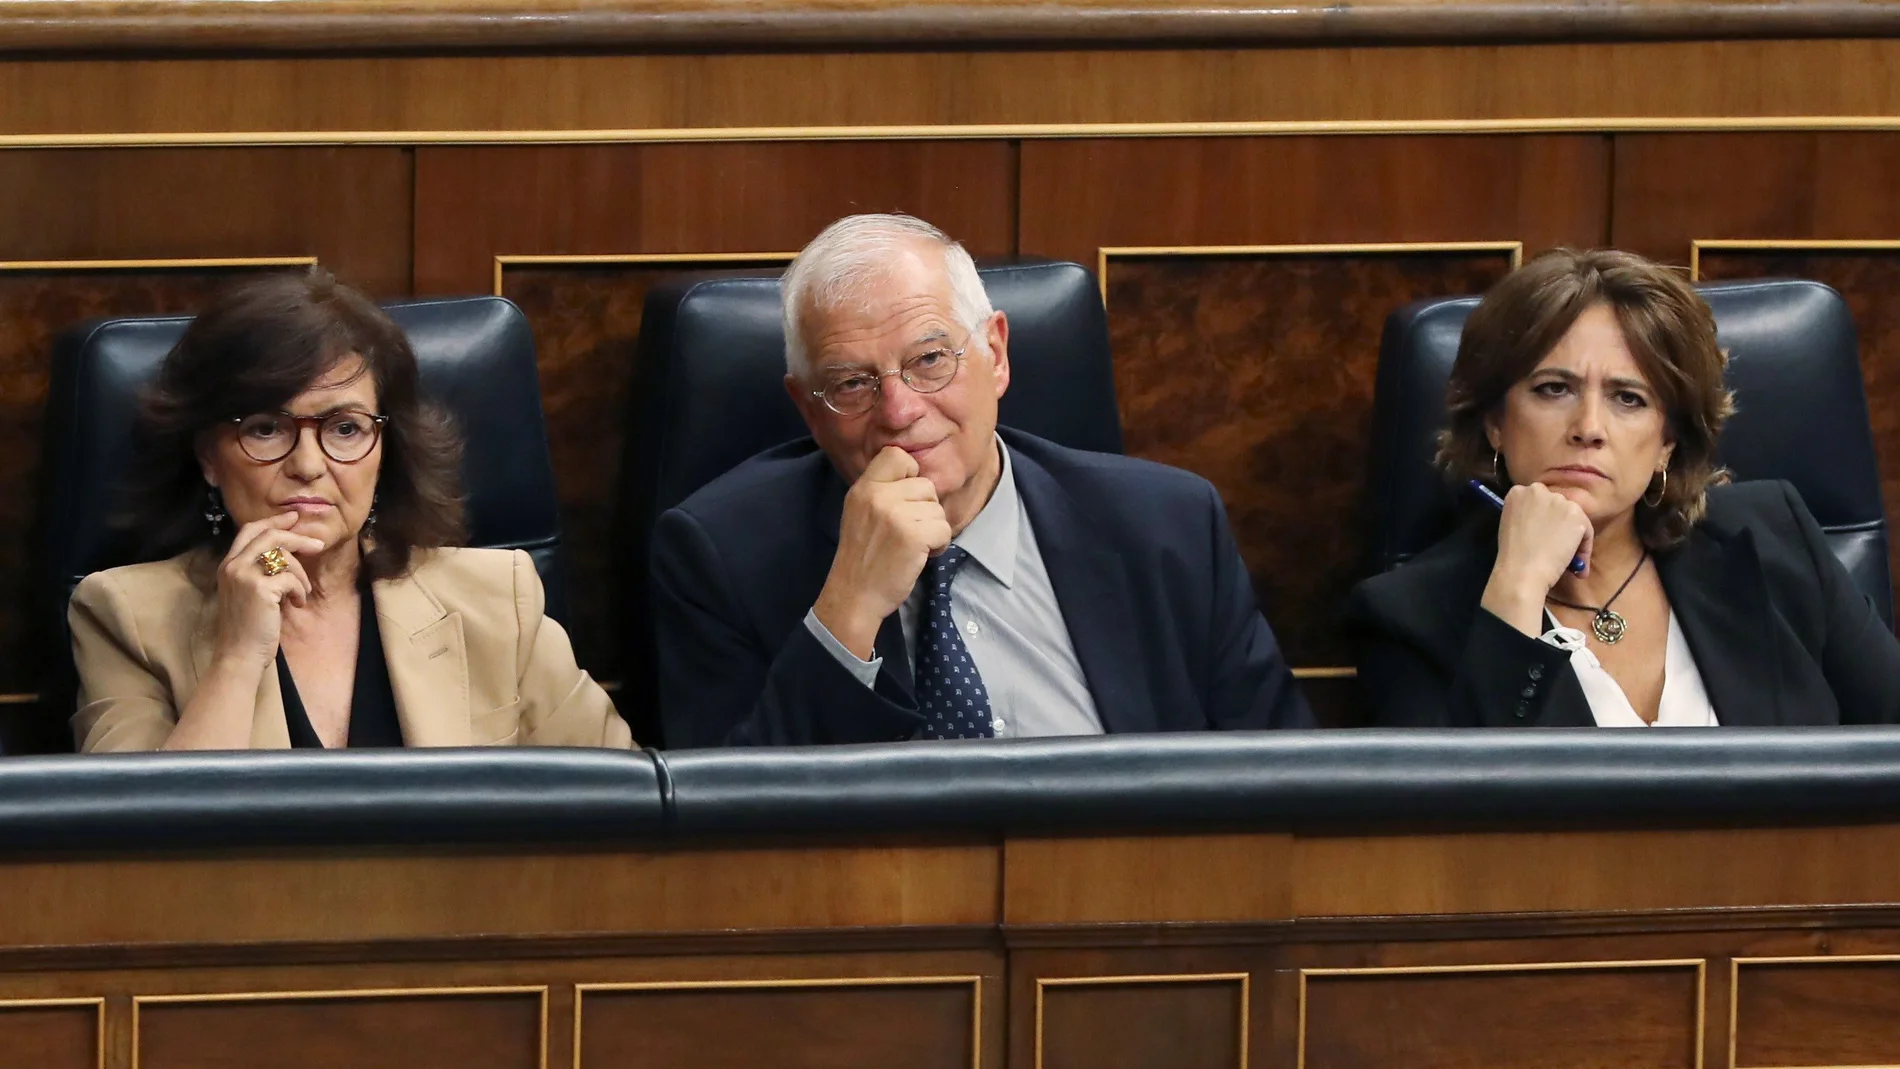 La vicepresidenta Carmen Calvo, el ministro de Asuntos Exteriores Josep Borrell, y la ministra de Justicia Dolores Delgado